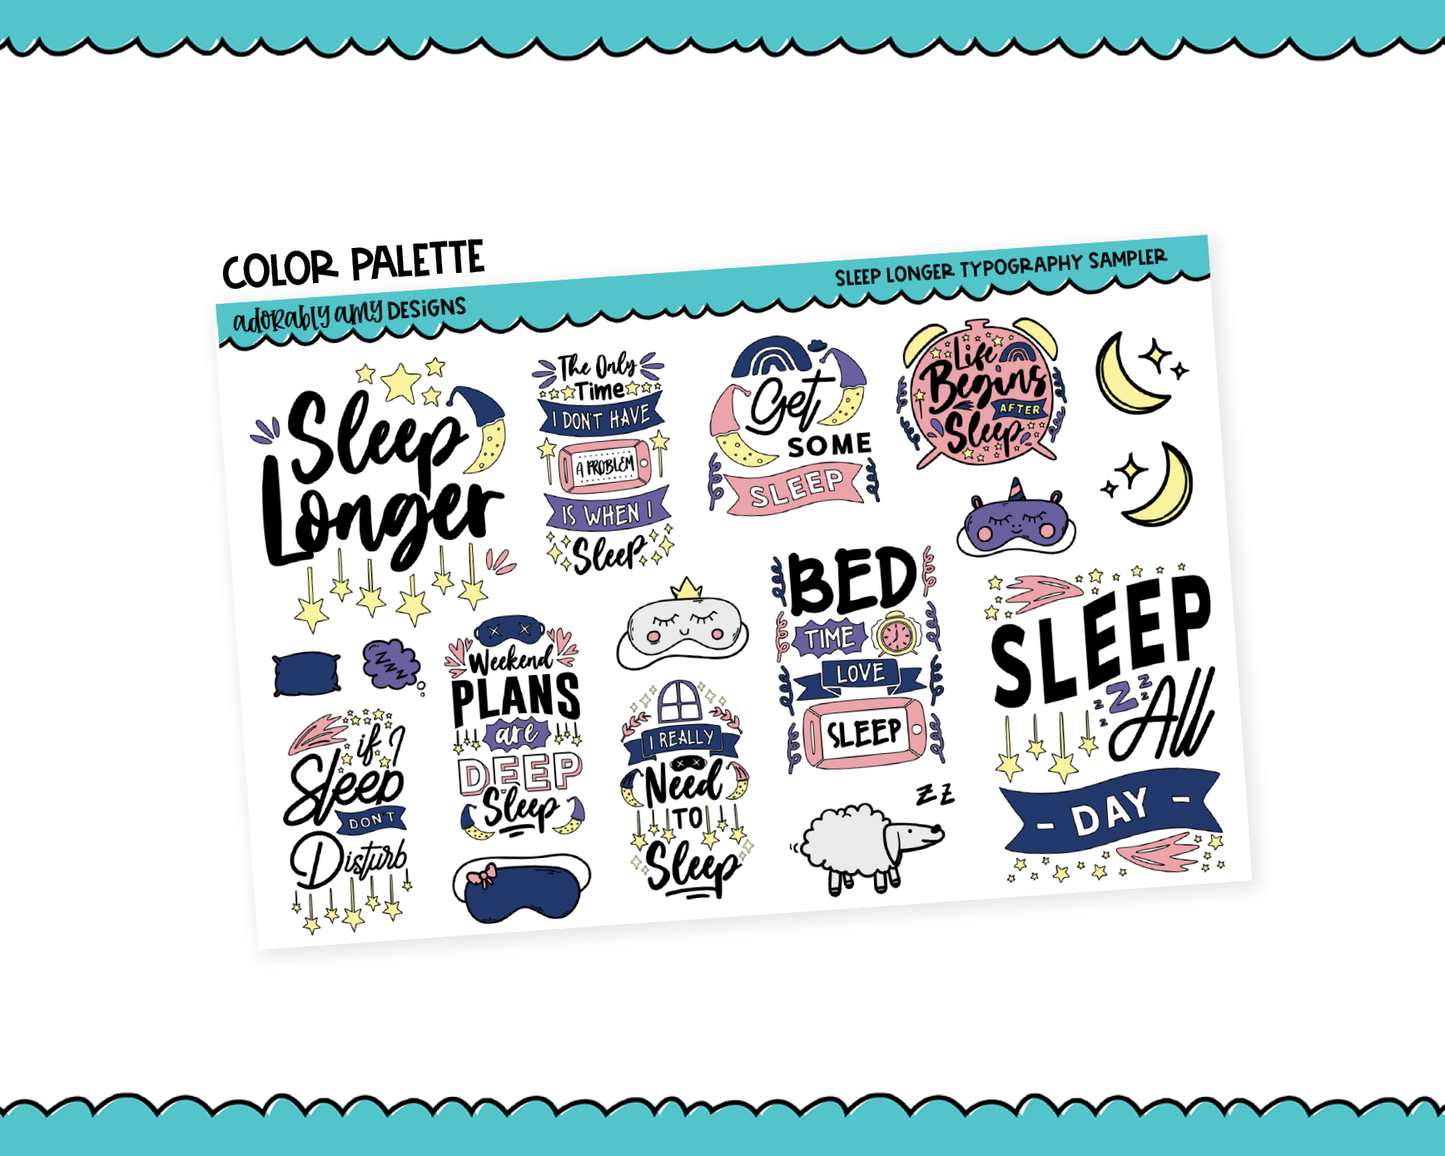 Sleep Longer Typography Sampler Planner Stickers for any Planner or Insert